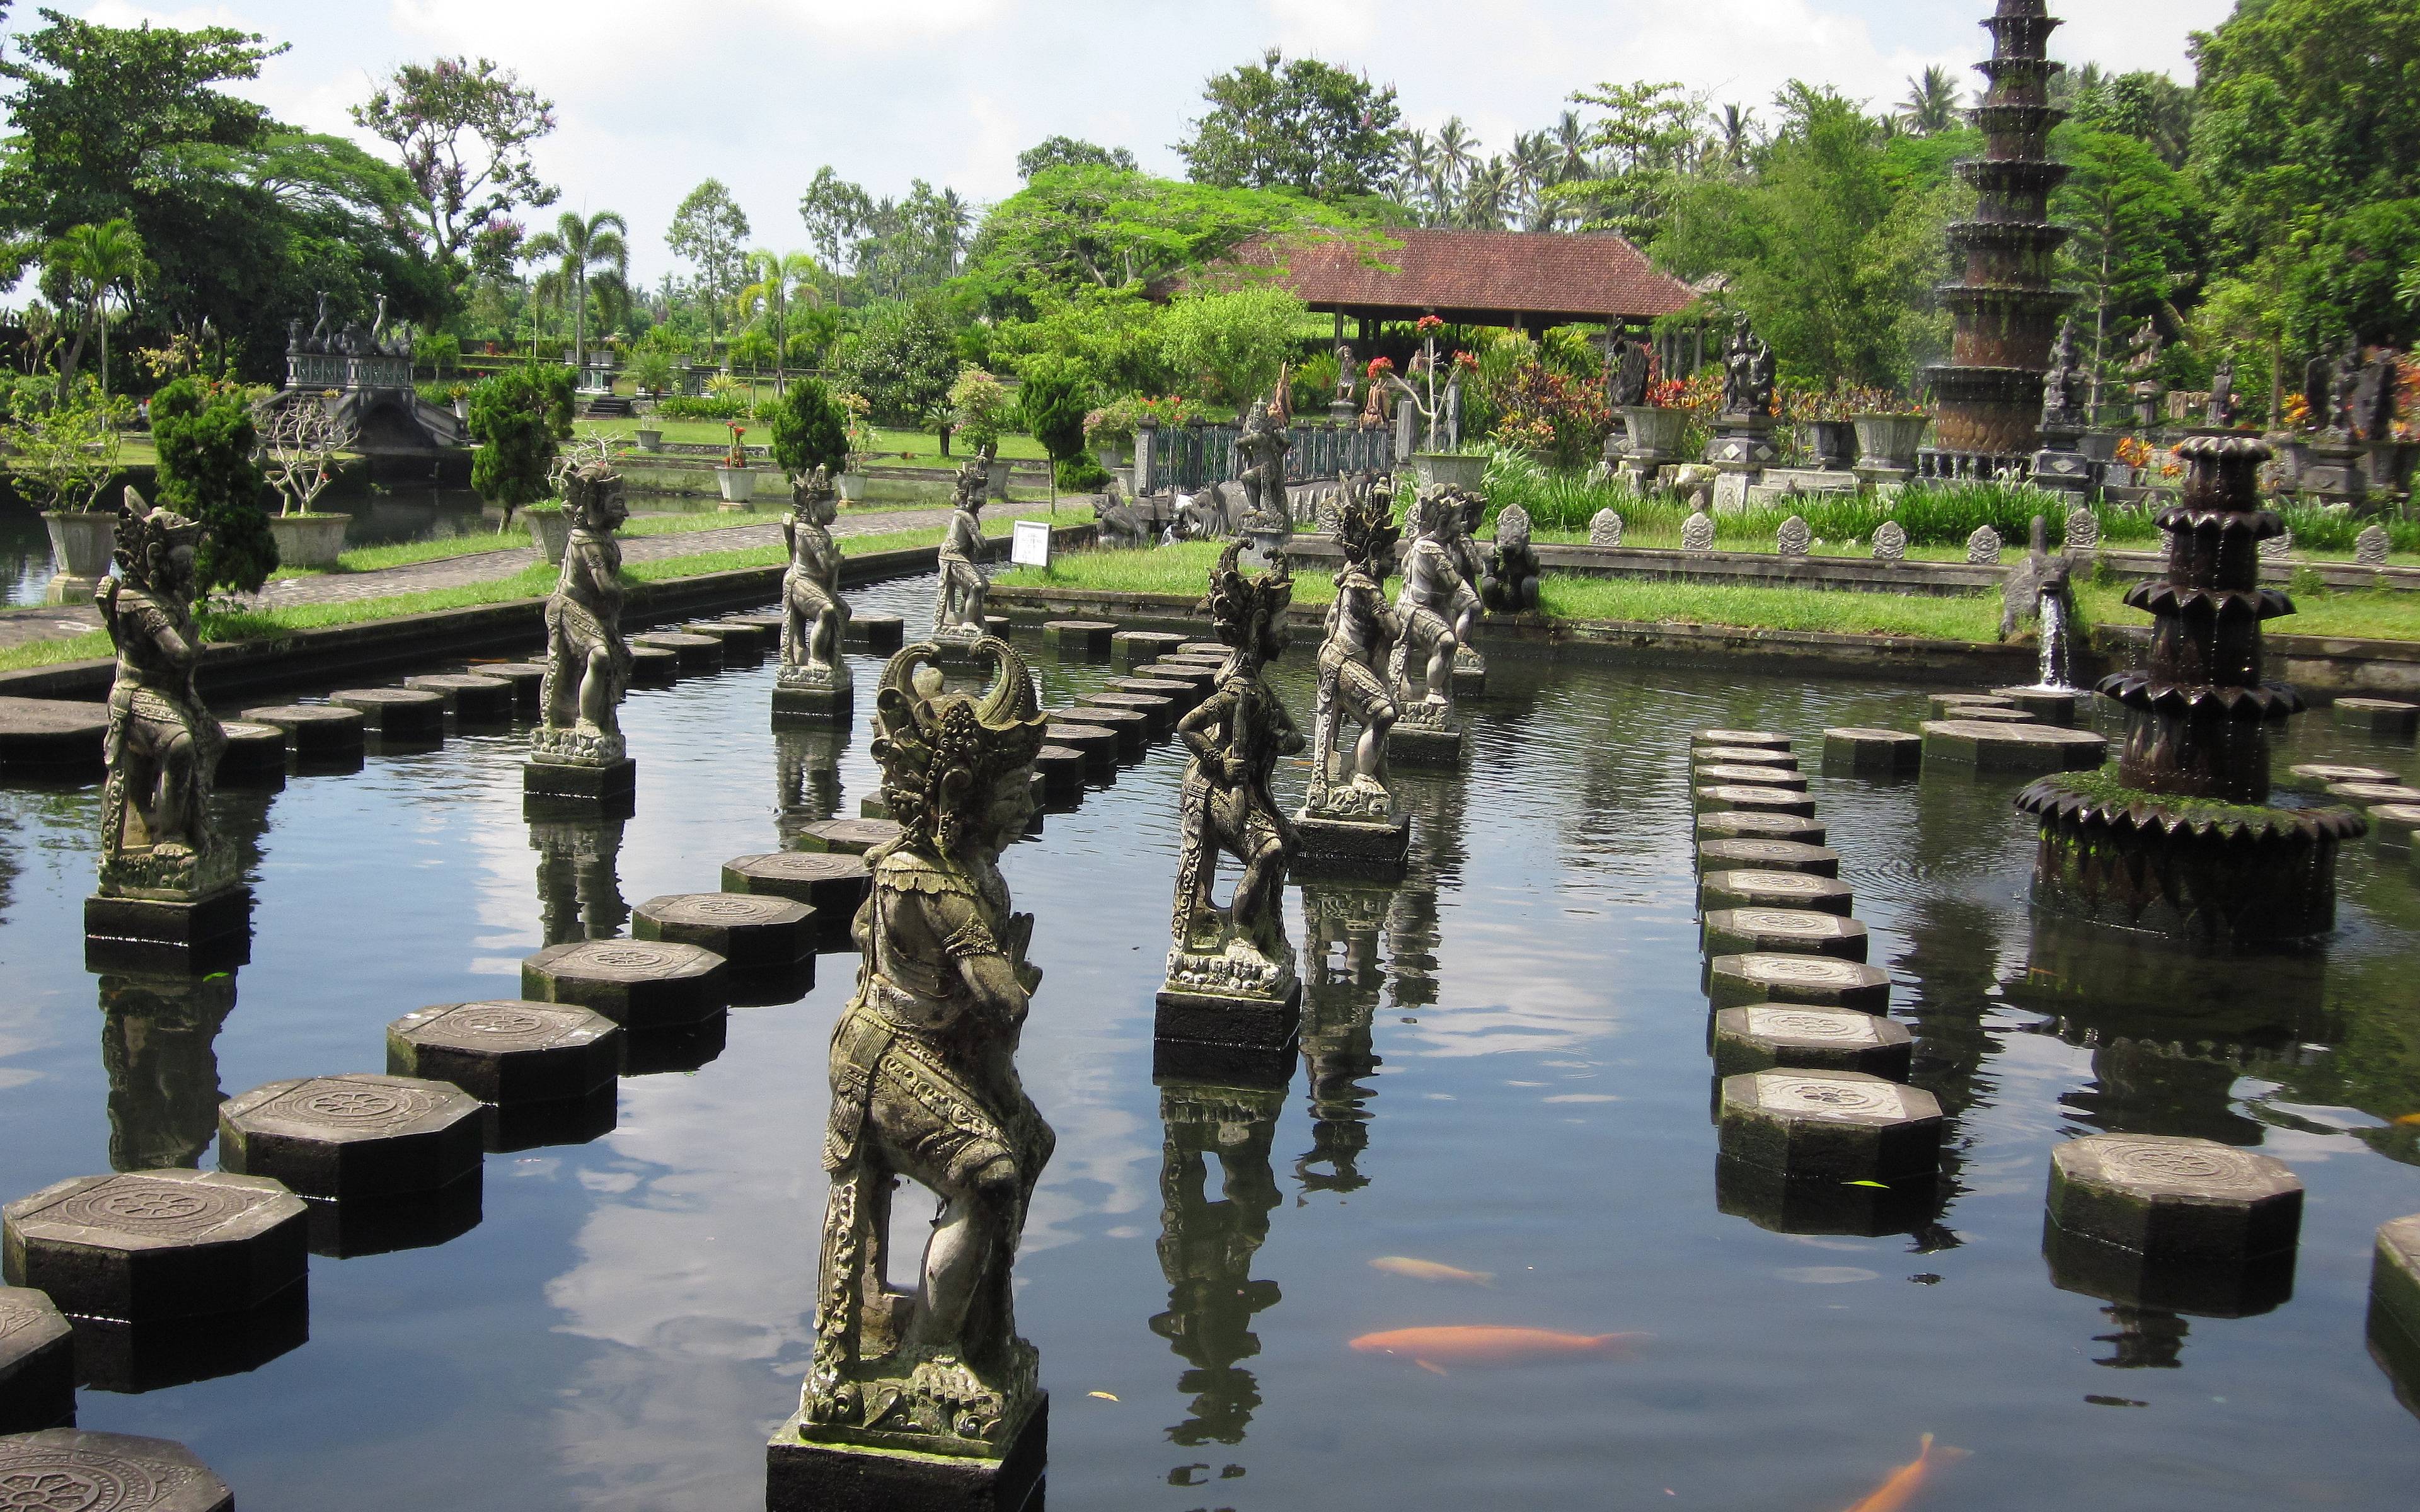 Paseos entre piscinas reales e impresionantes templos